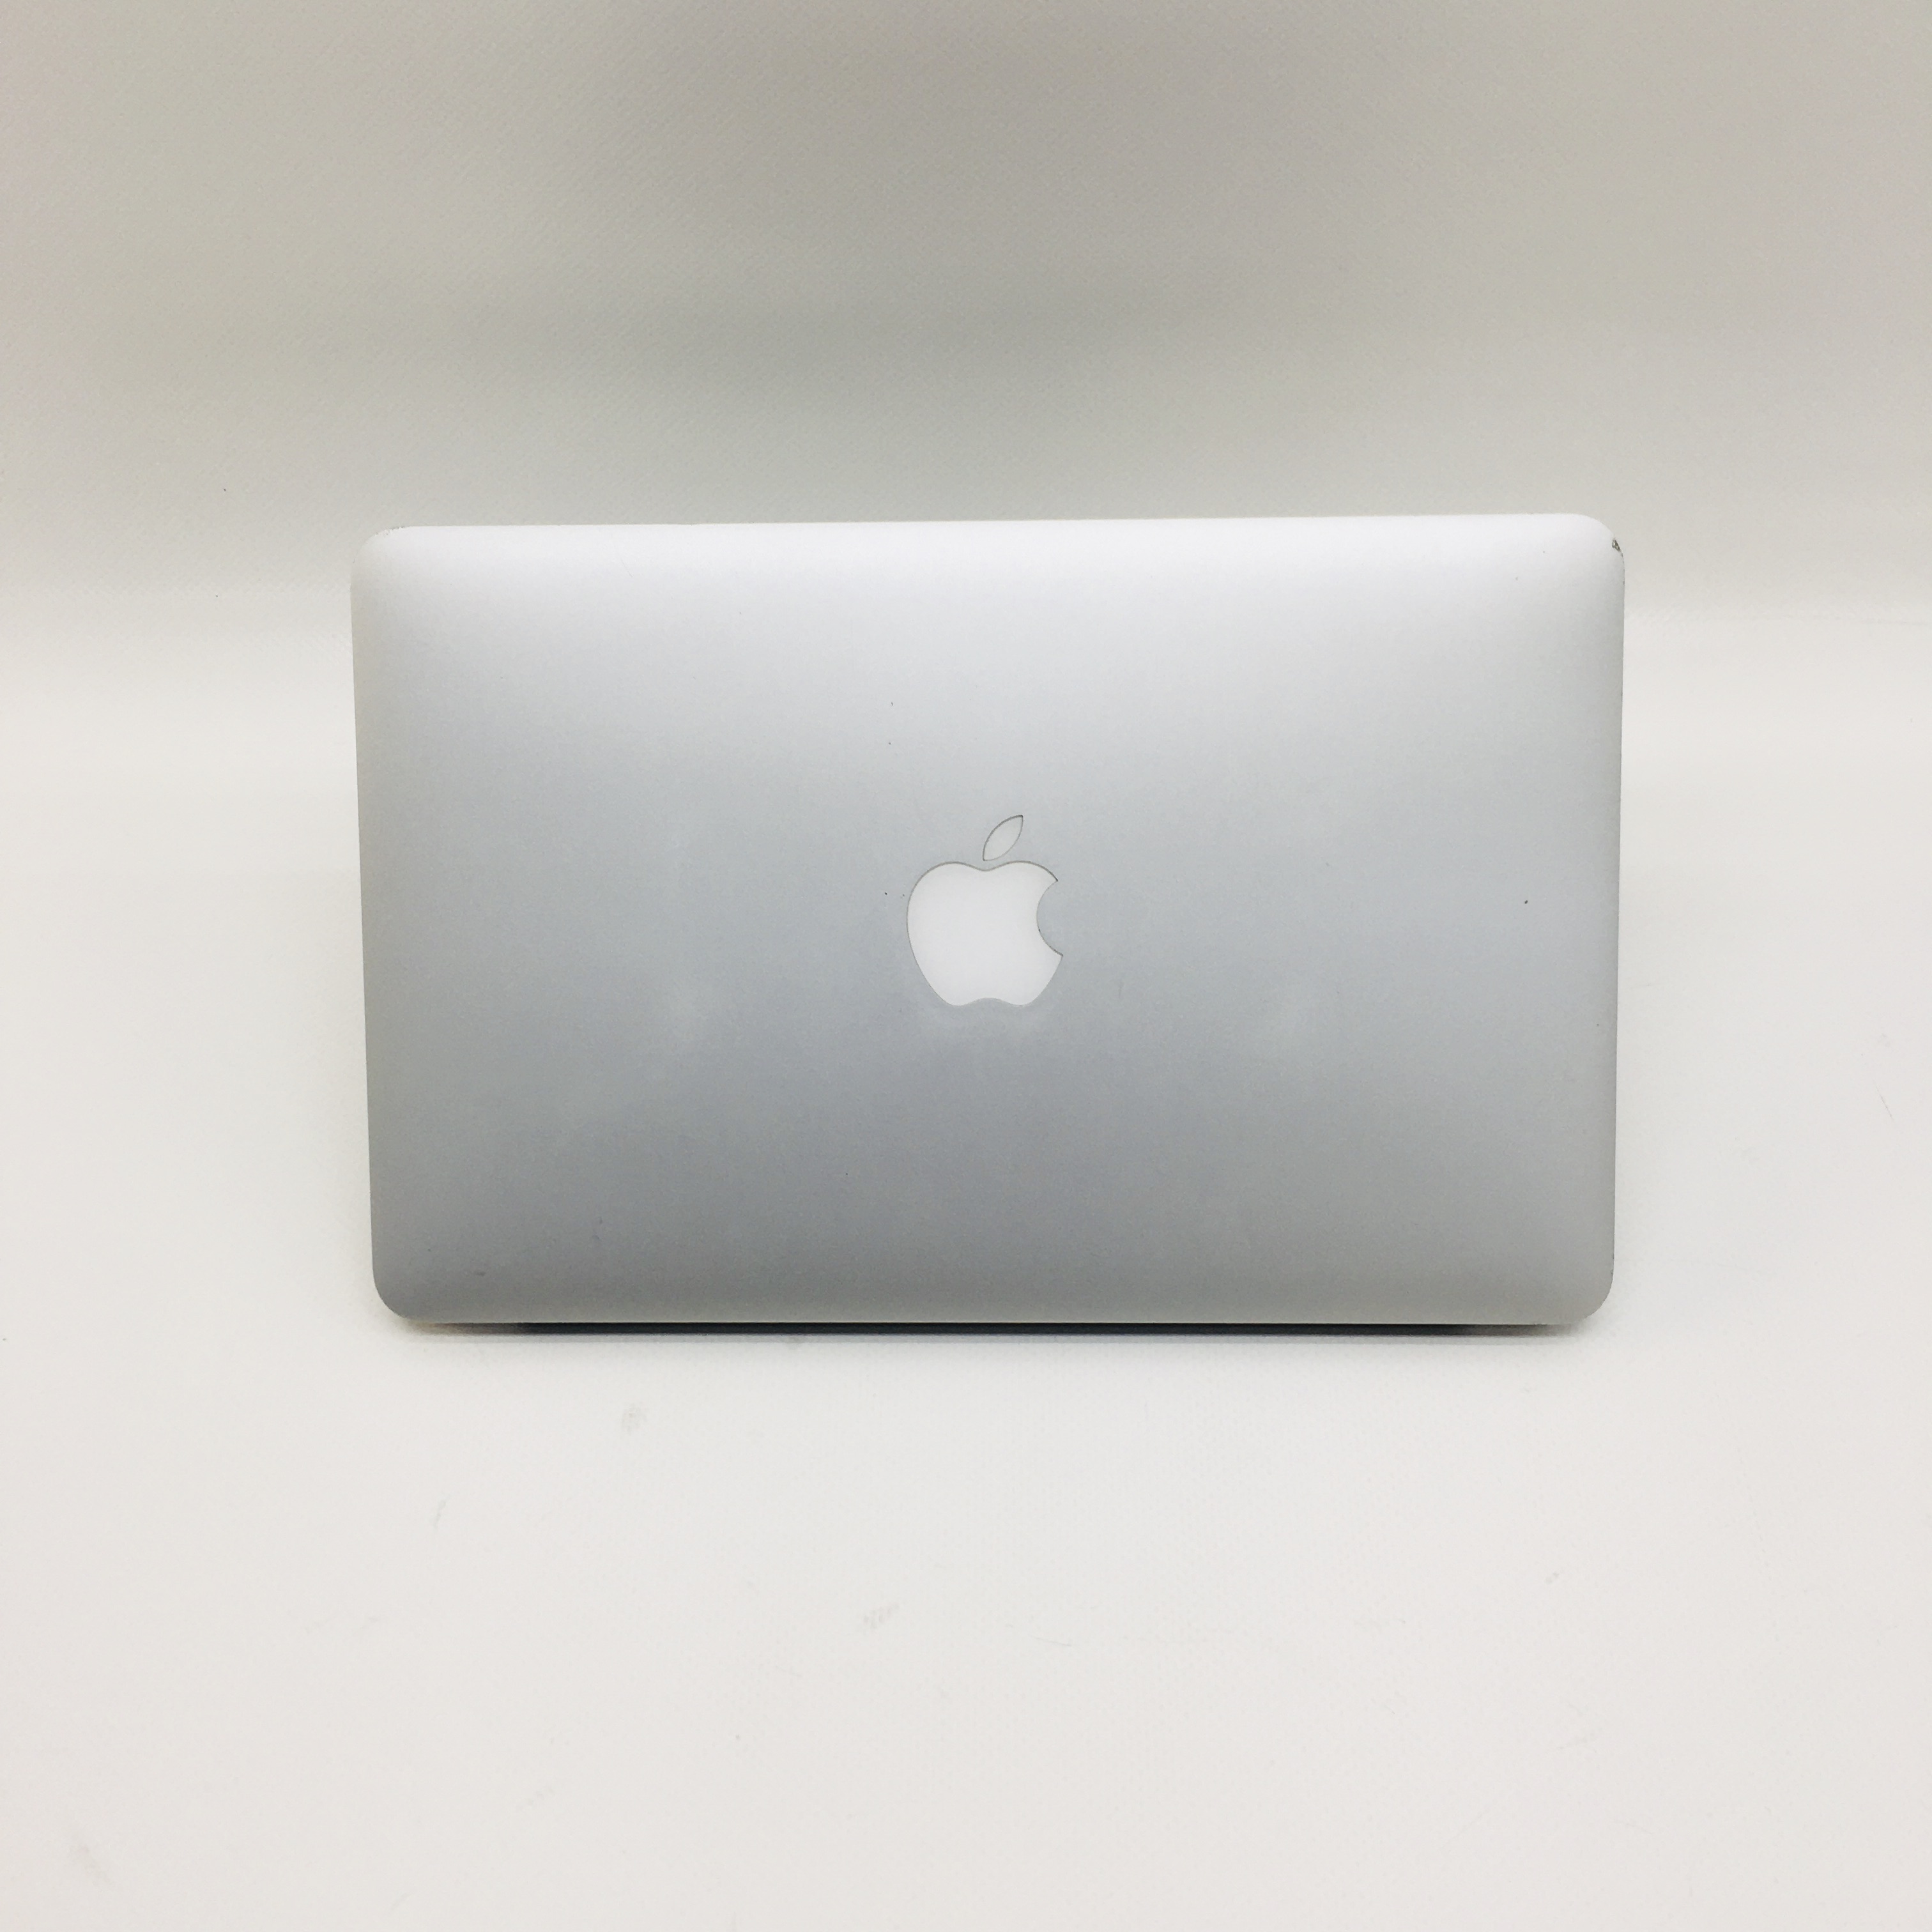 MacBook Air 11" Mid 2013 (Intel Core i5 1.3 GHz 4 GB RAM 128 GB SSD), Intel Core i5 1.3 GHz, 4 GB RAM, 128 GB SSD, image 4